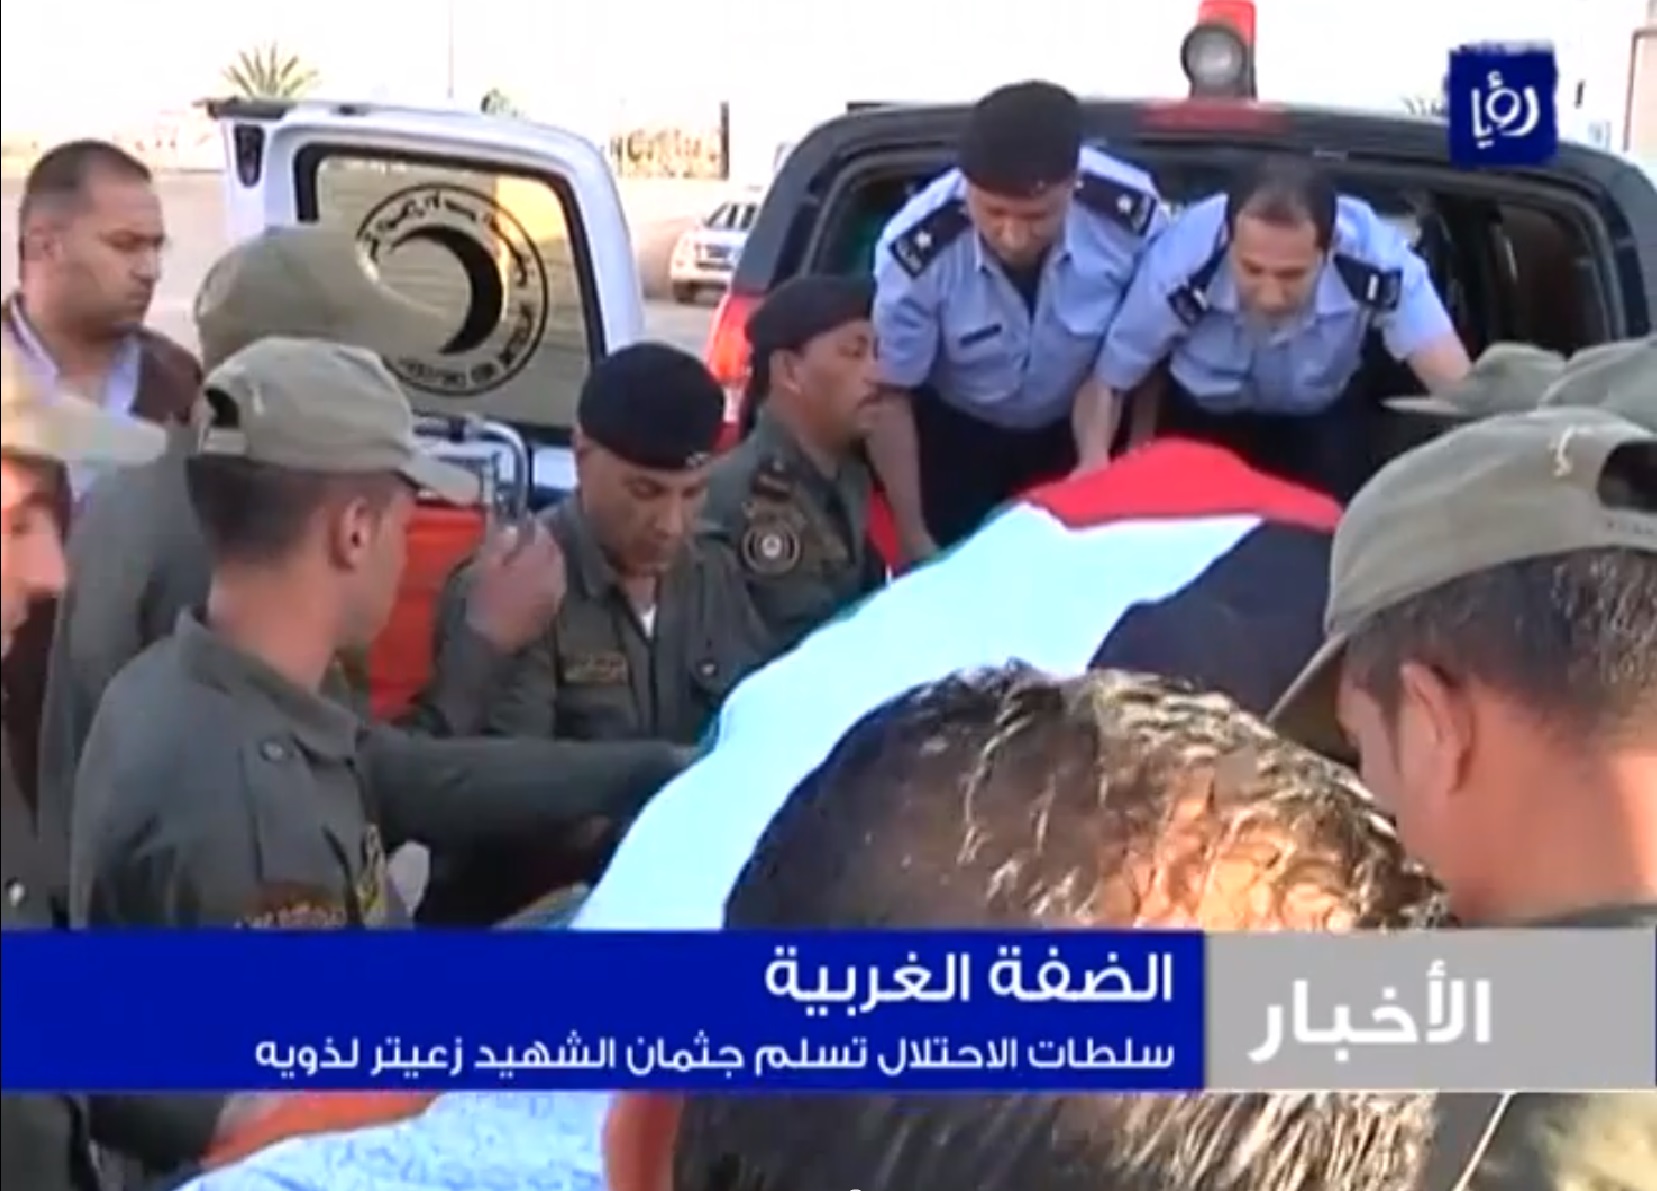 שוטרים ירדנים בגשר אלנבי מעבירים את גופתו של זעיתר לכוחות פלסטינים (צילום מסך: יוטיוב)